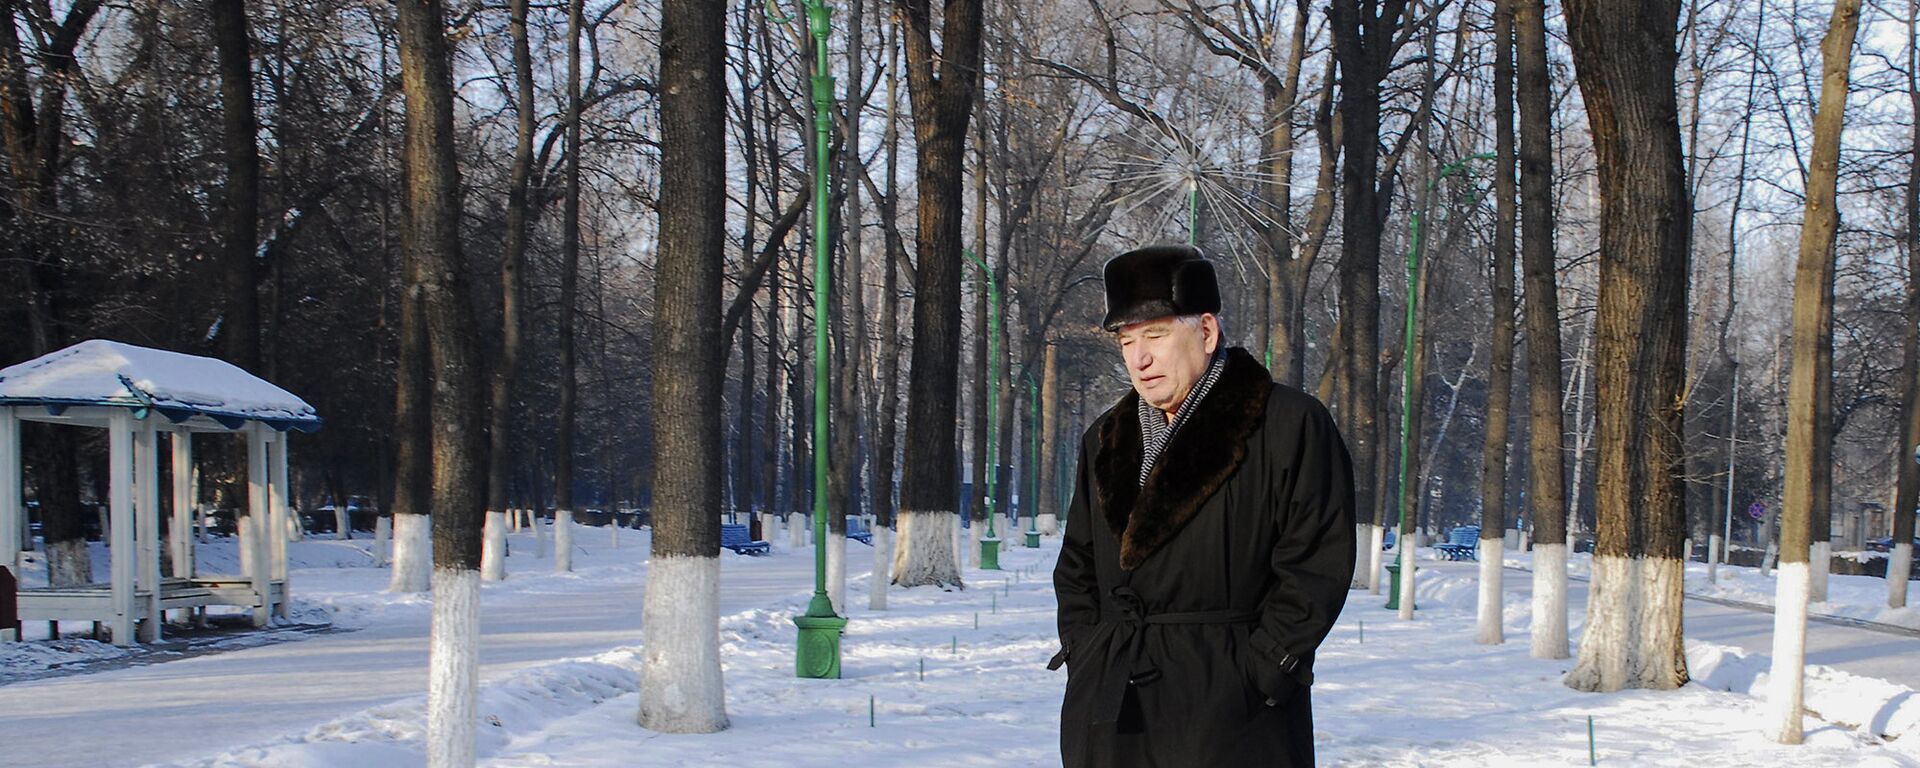 Последняя фотосессия писателя Чингиза Айтматова в КР - Sputnik Кыргызстан, 1920, 12.12.2021